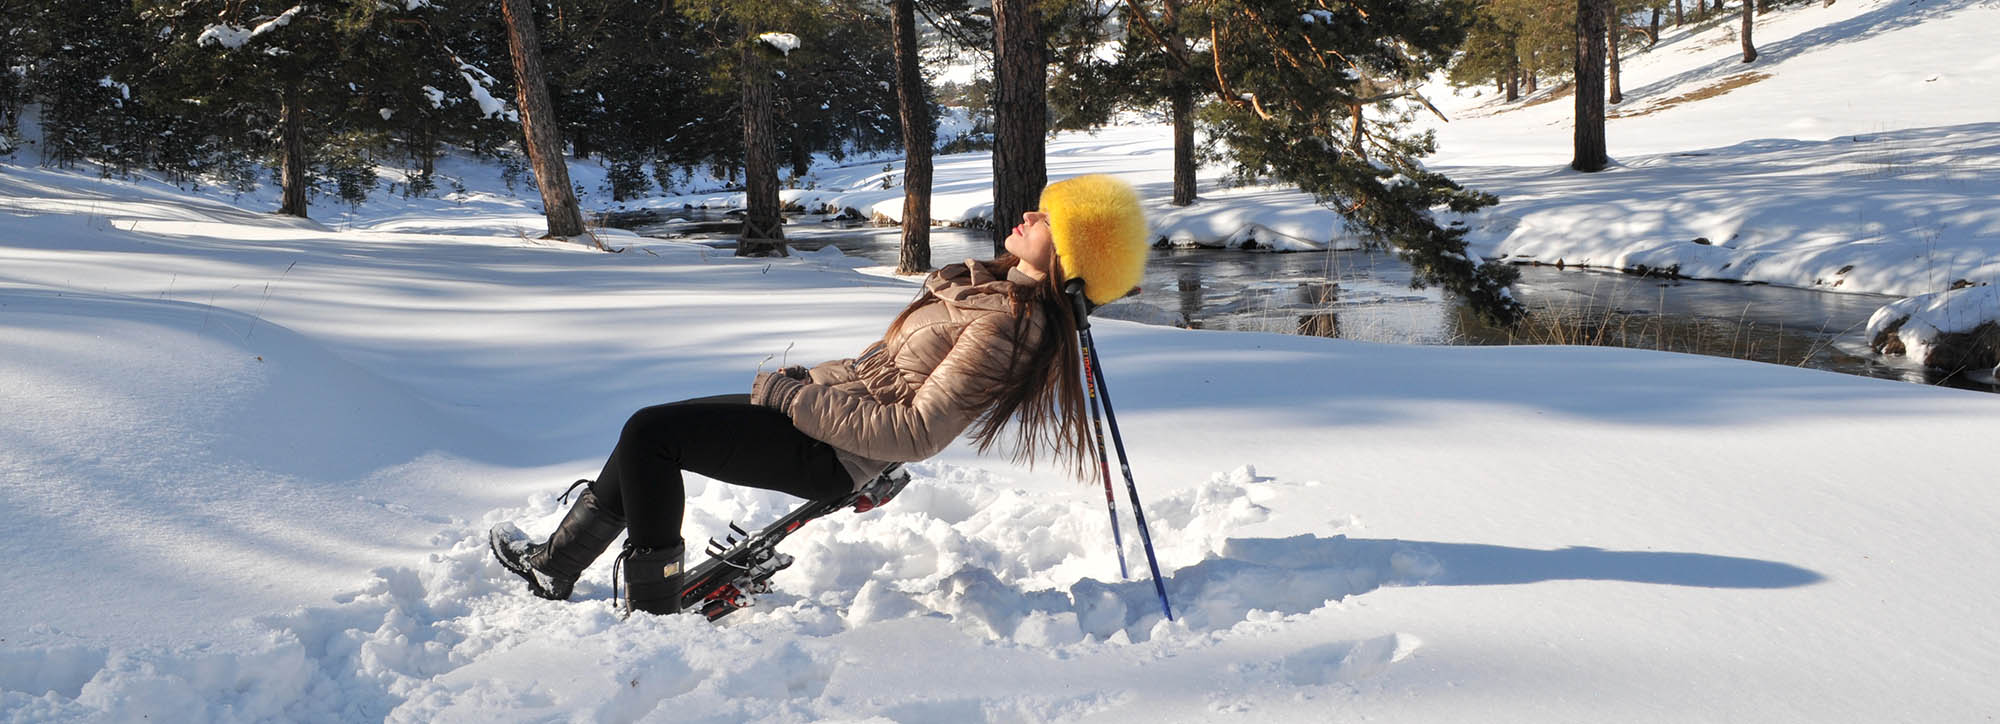 zlatibor devojka skije sneg